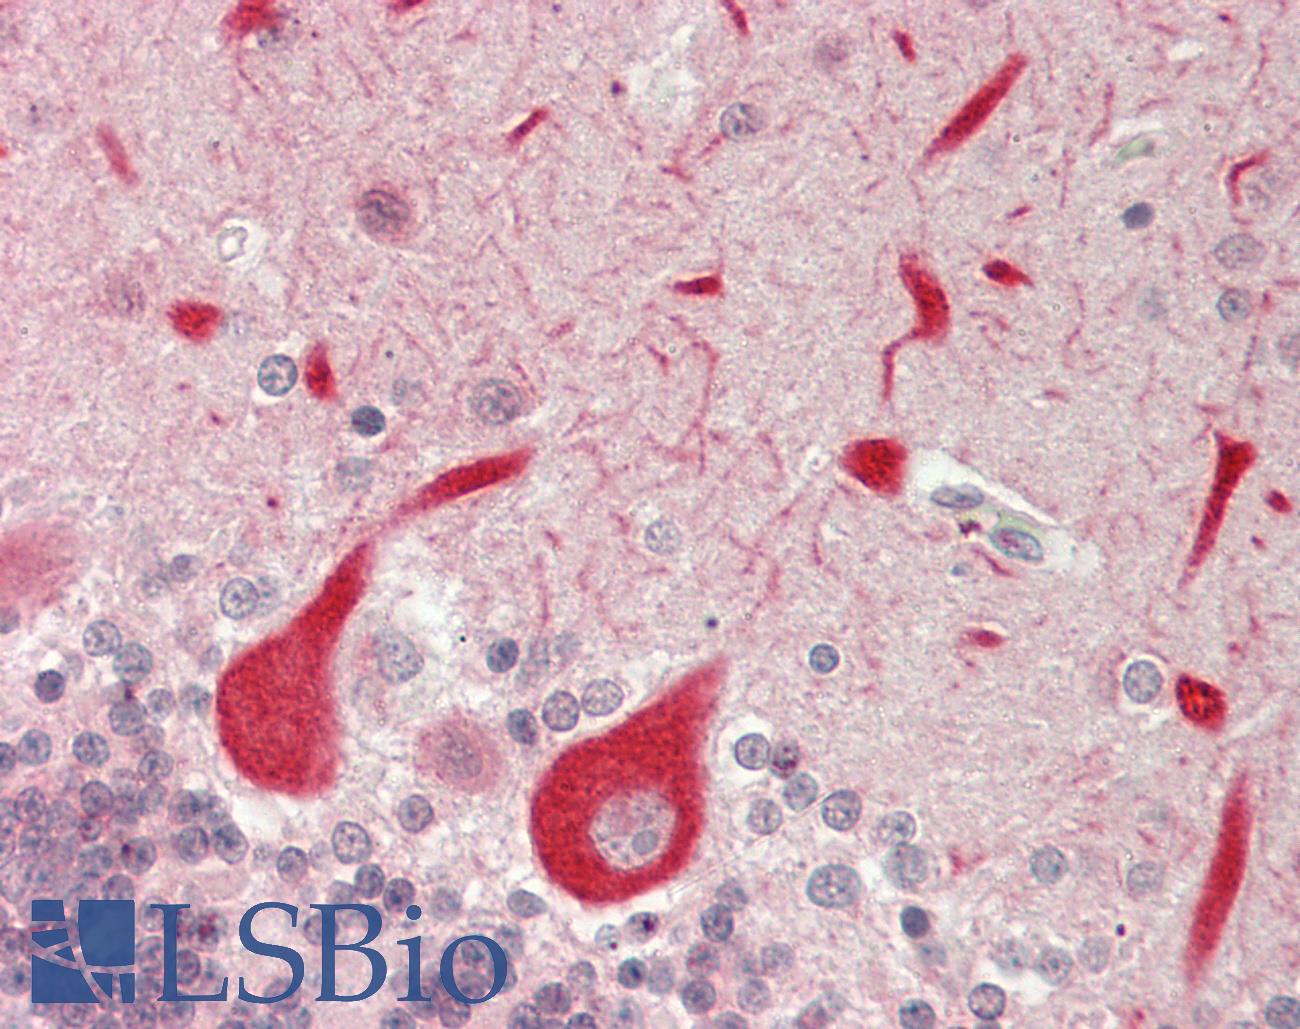 GPR152 Antibody - Human Brain, Cerebellum: Formalin-Fixed, Paraffin-Embedded (FFPE)